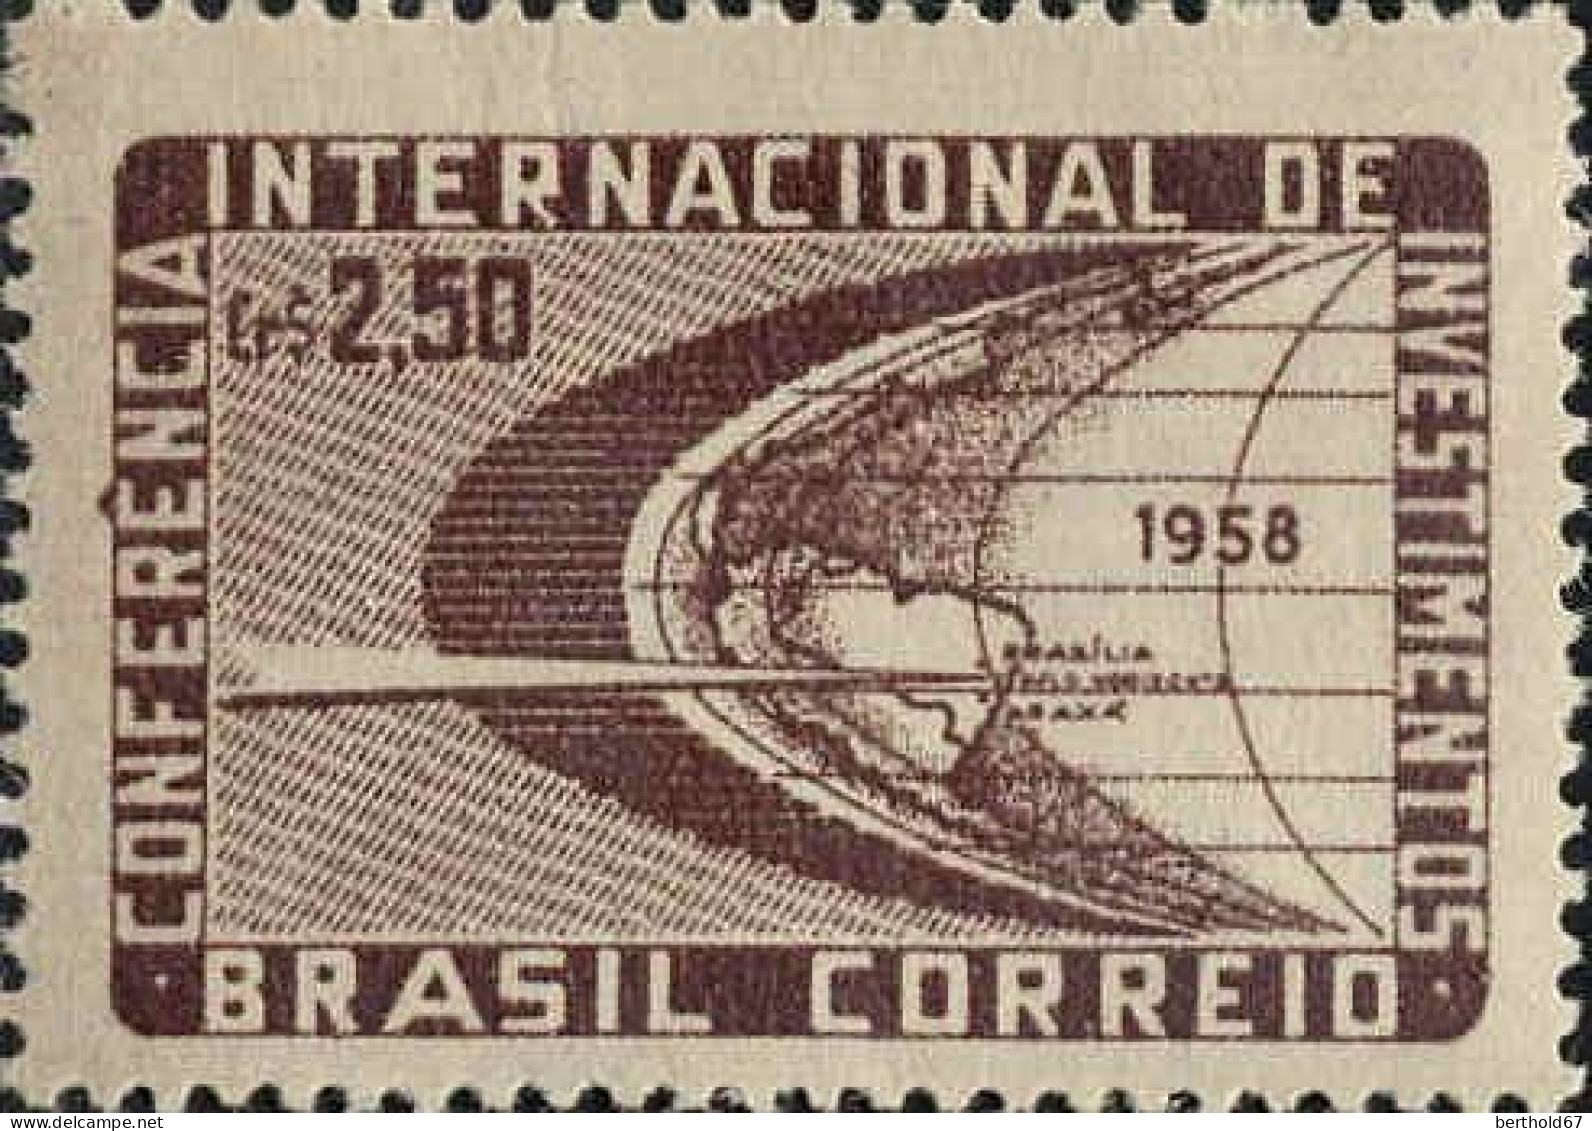 Brésil Poste N** Yv: 656 Mi:938 Conferencia Internacional De Investimentos - Unused Stamps